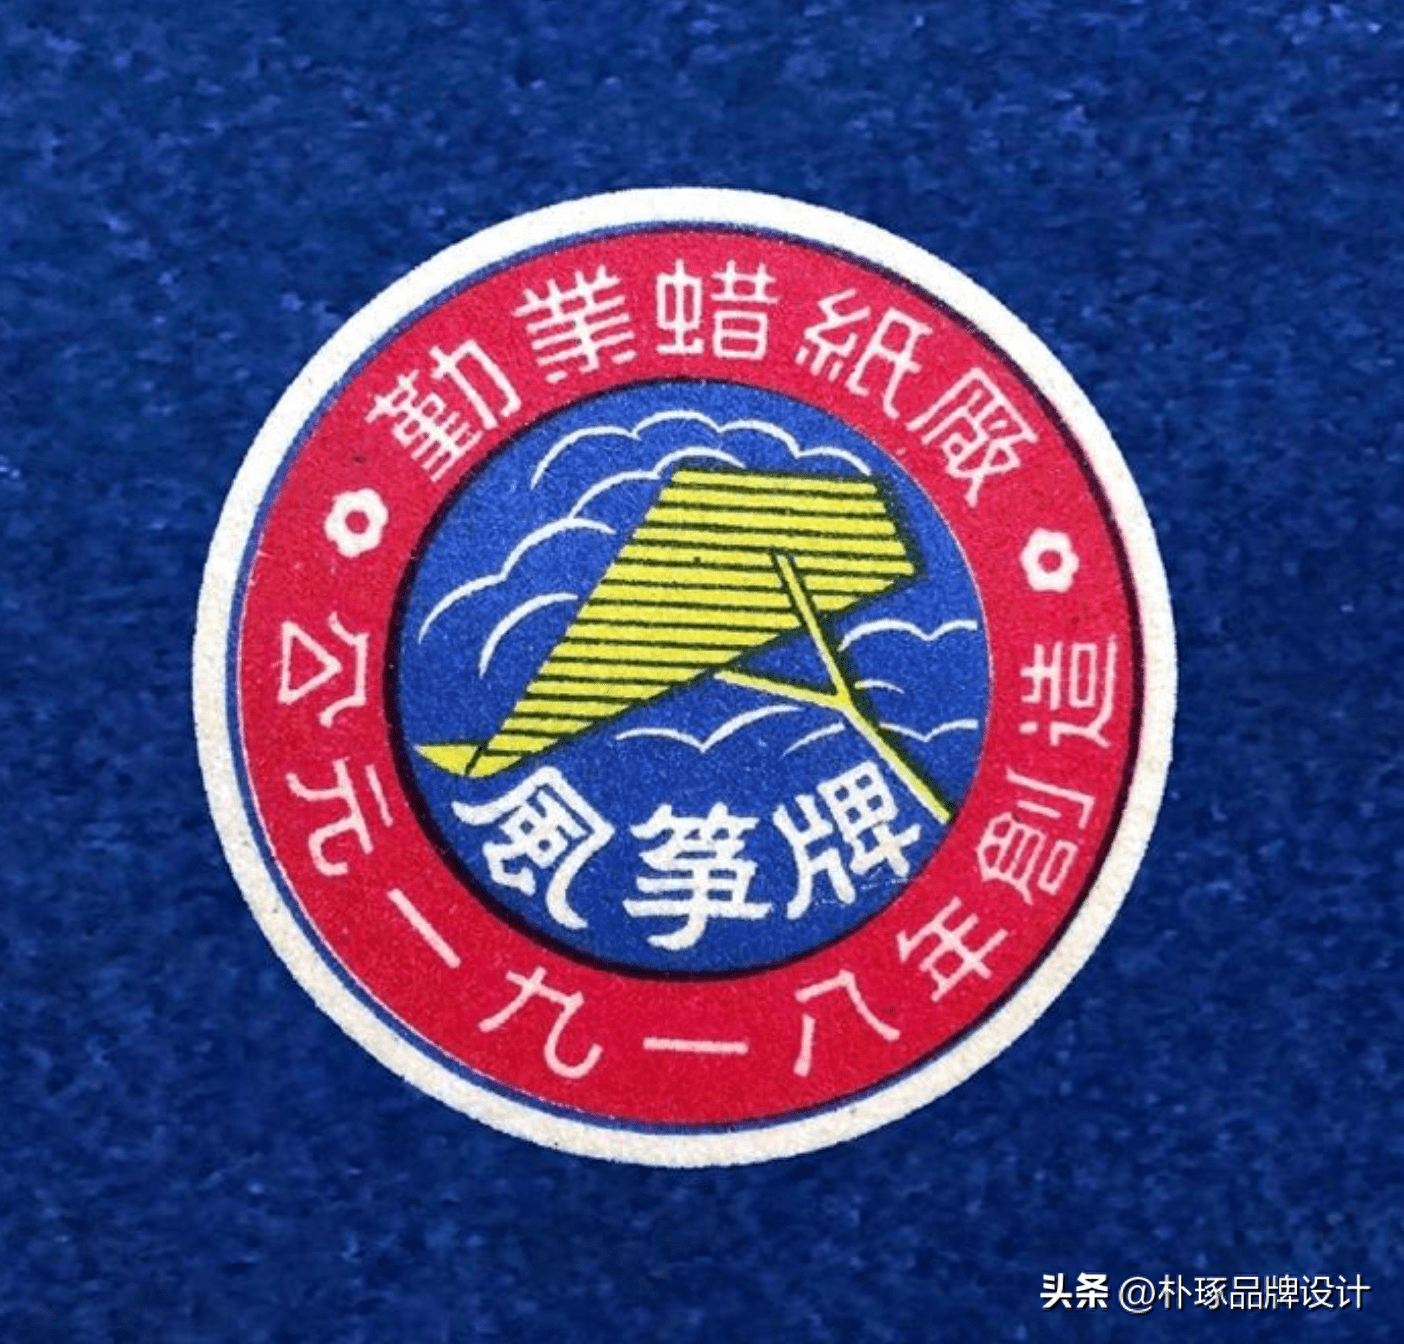 近代中国的商标logo,现代看依然惊艳